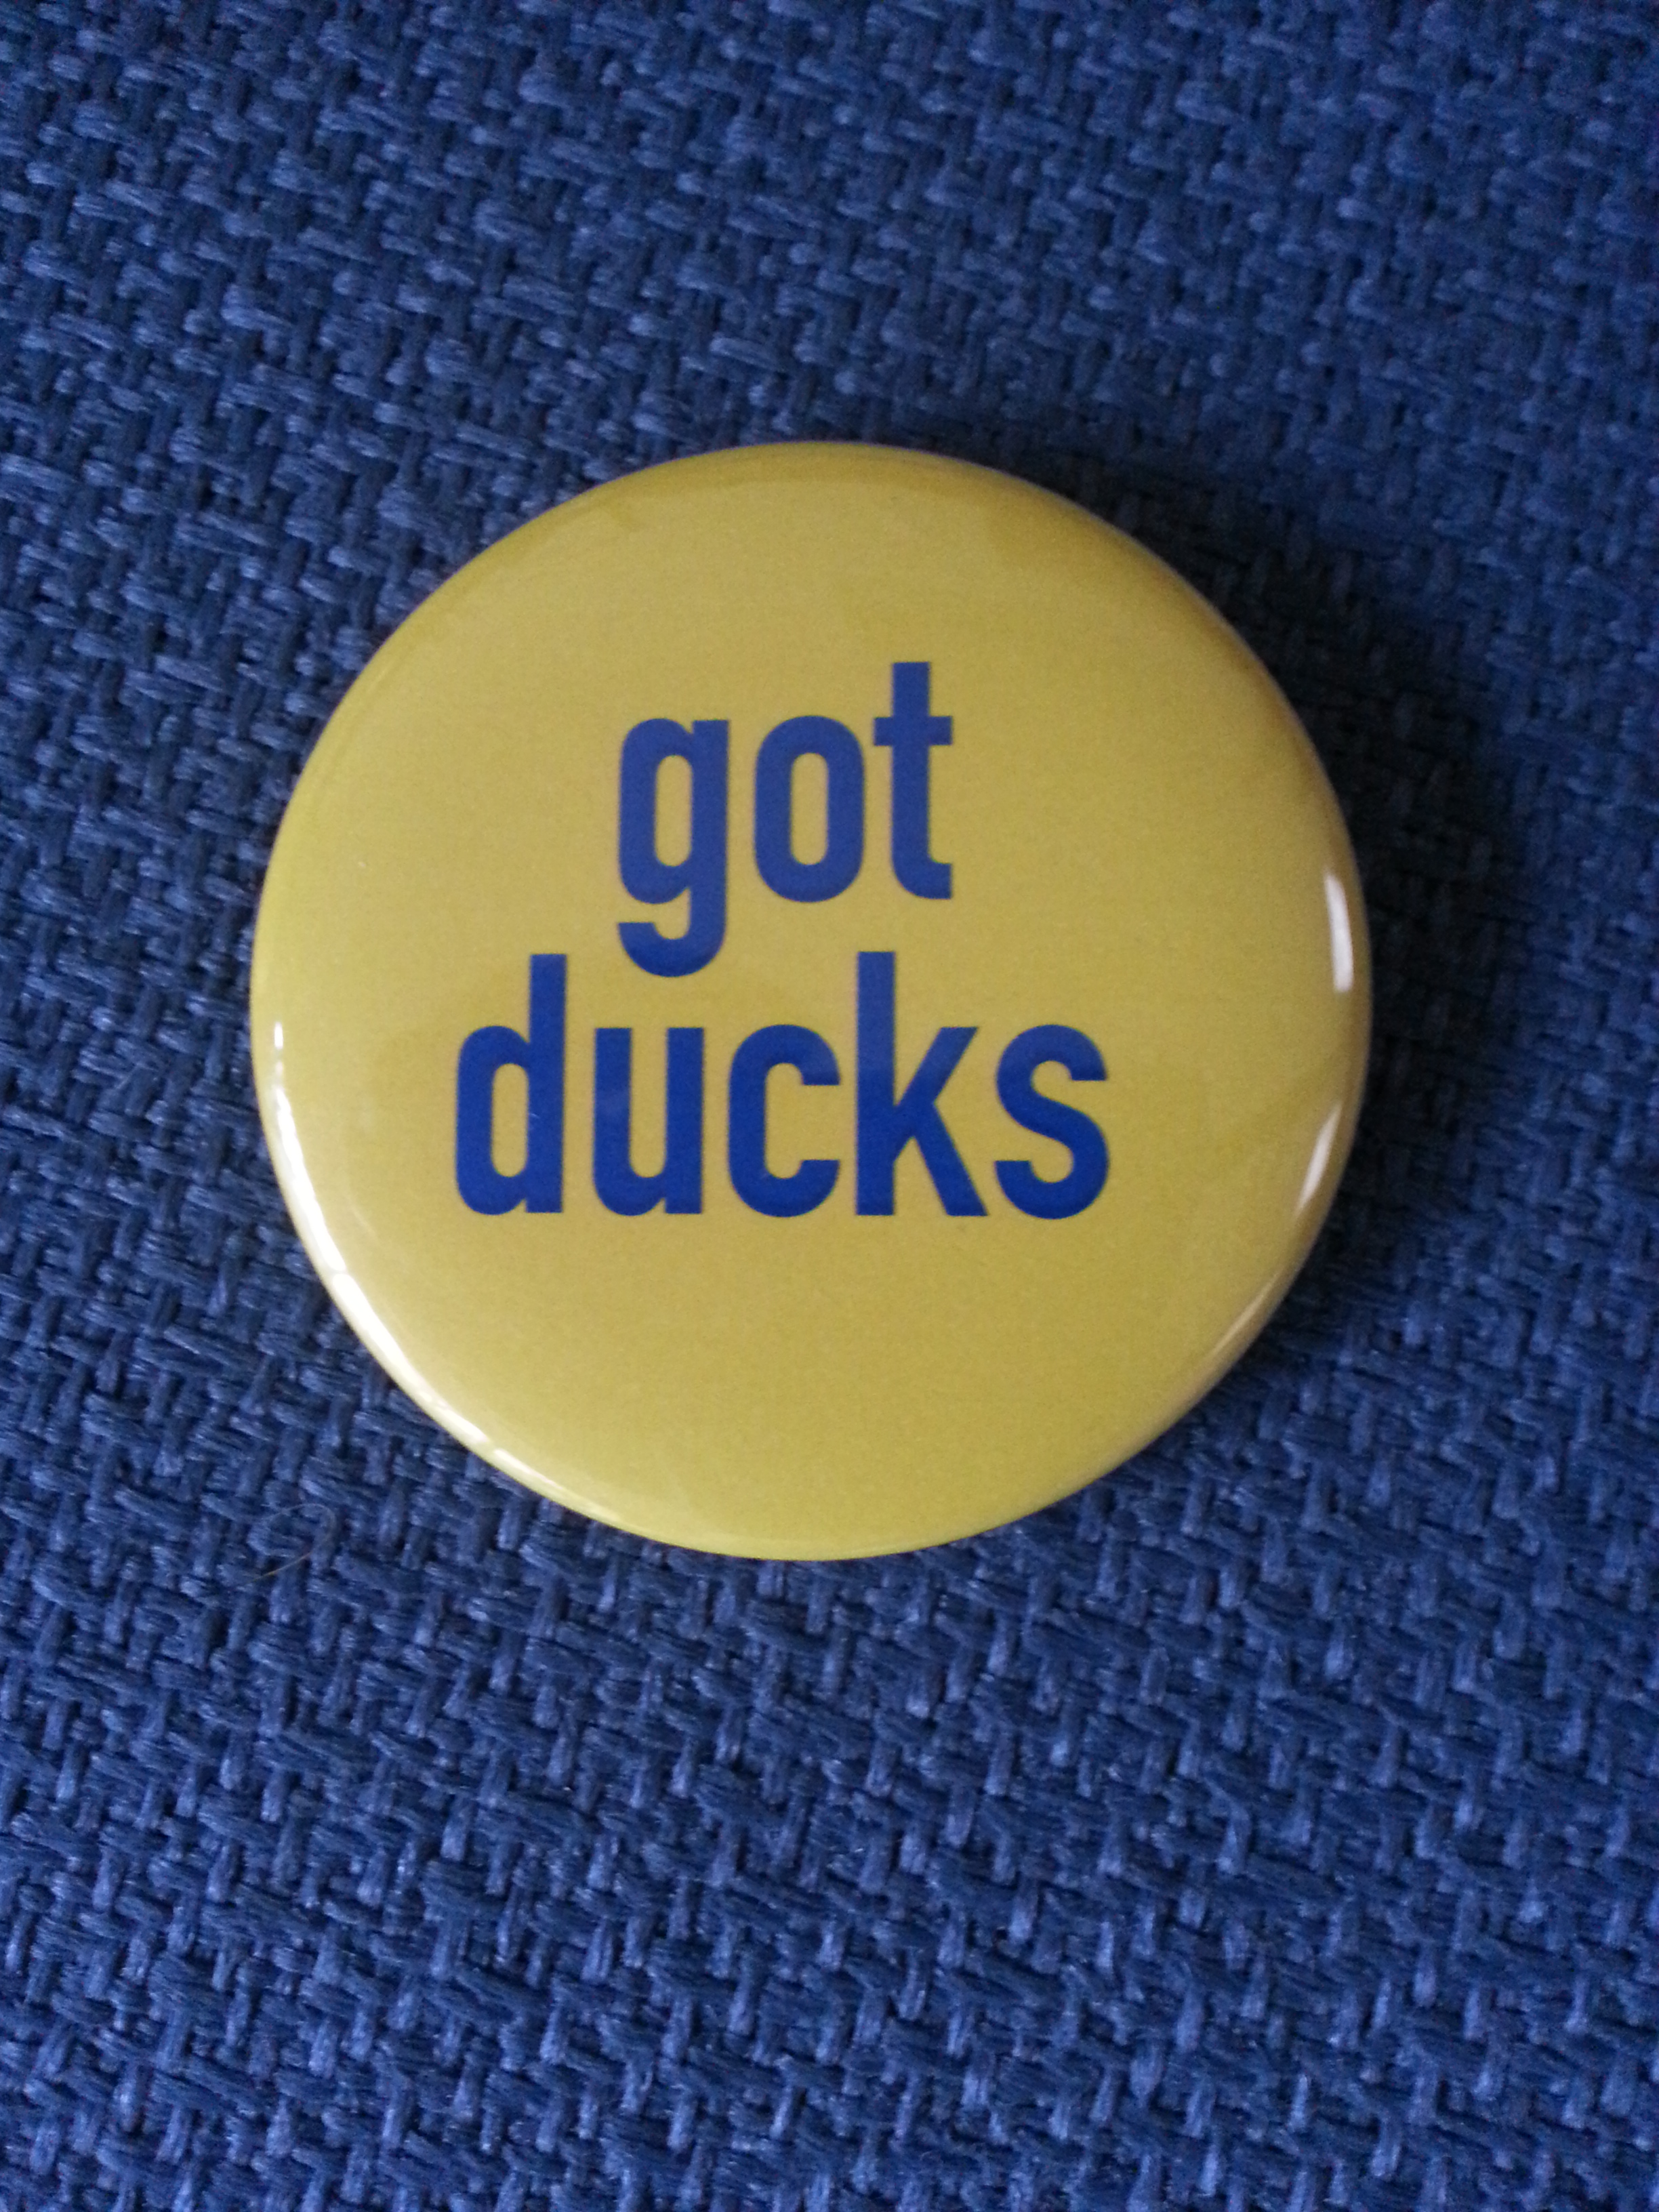 Got Ducks pin.jpg